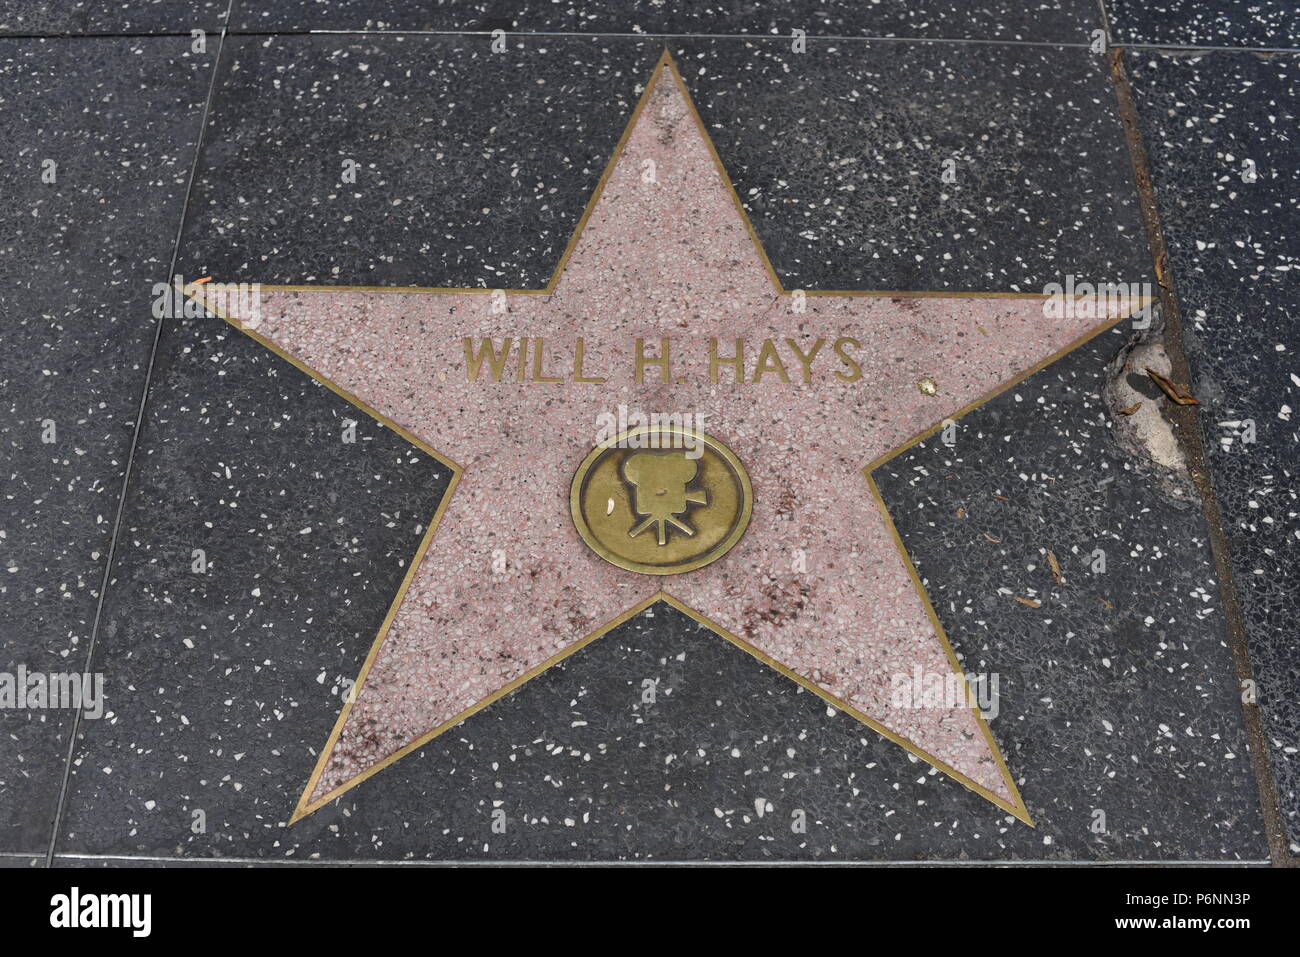 HOLLYWOOD, CA - 29 Giugno: sarà H. Hays stella sulla Hollywood Walk of Fame in Hollywood, la California il 29 giugno 2018. Foto Stock